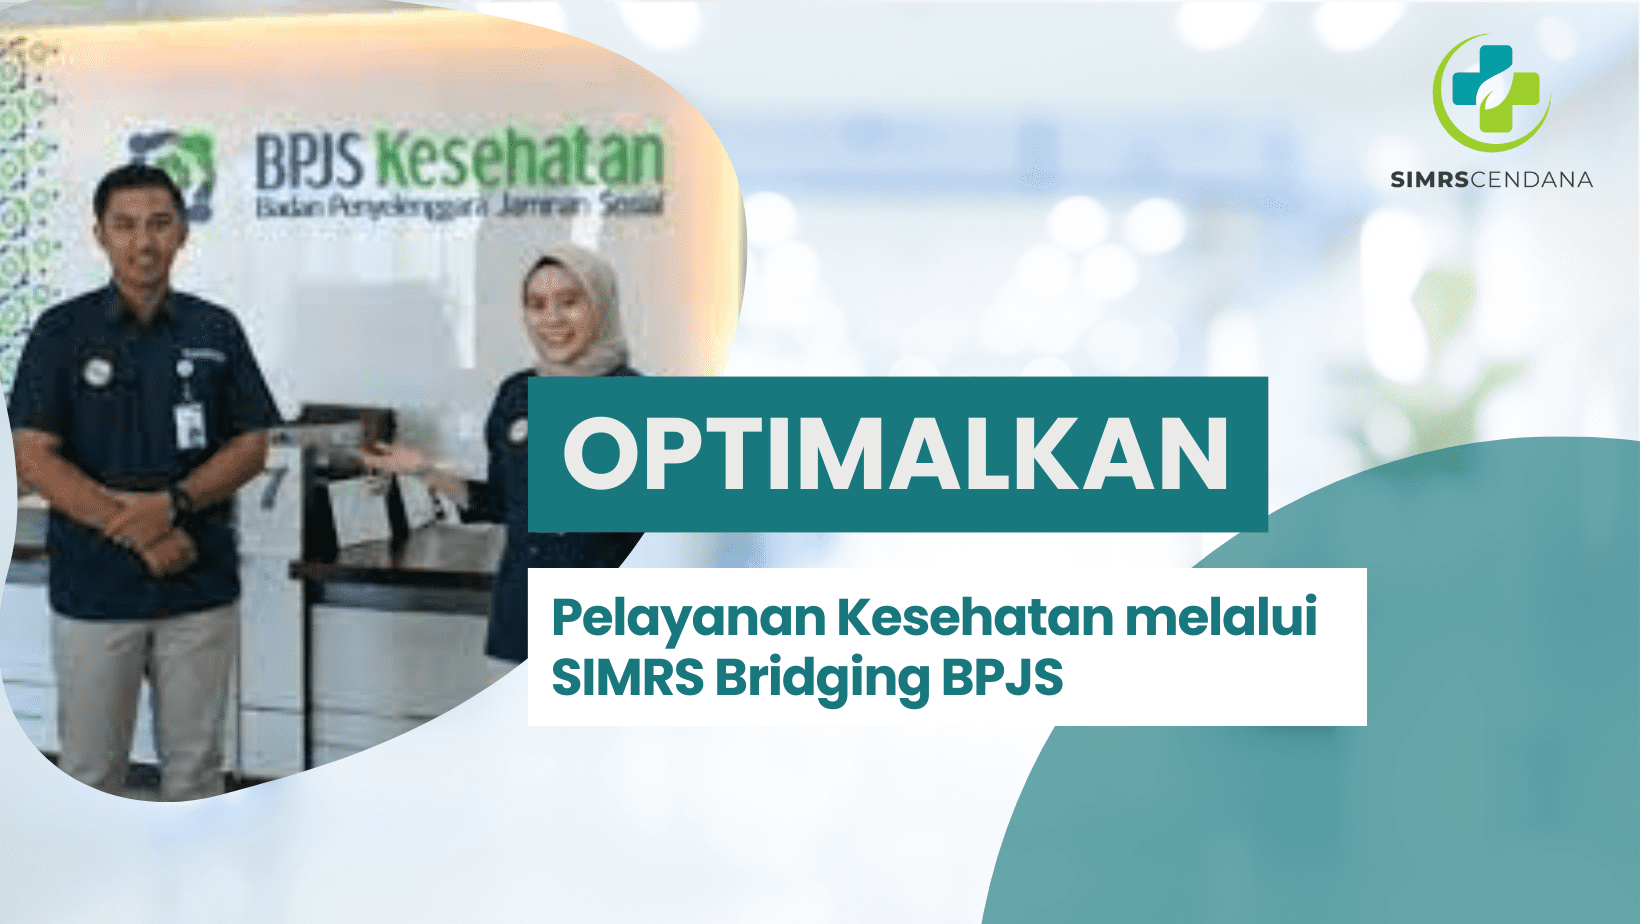 Optimalkan Pelayanan Kesehatan melalui SIMRS Bridging BPJS